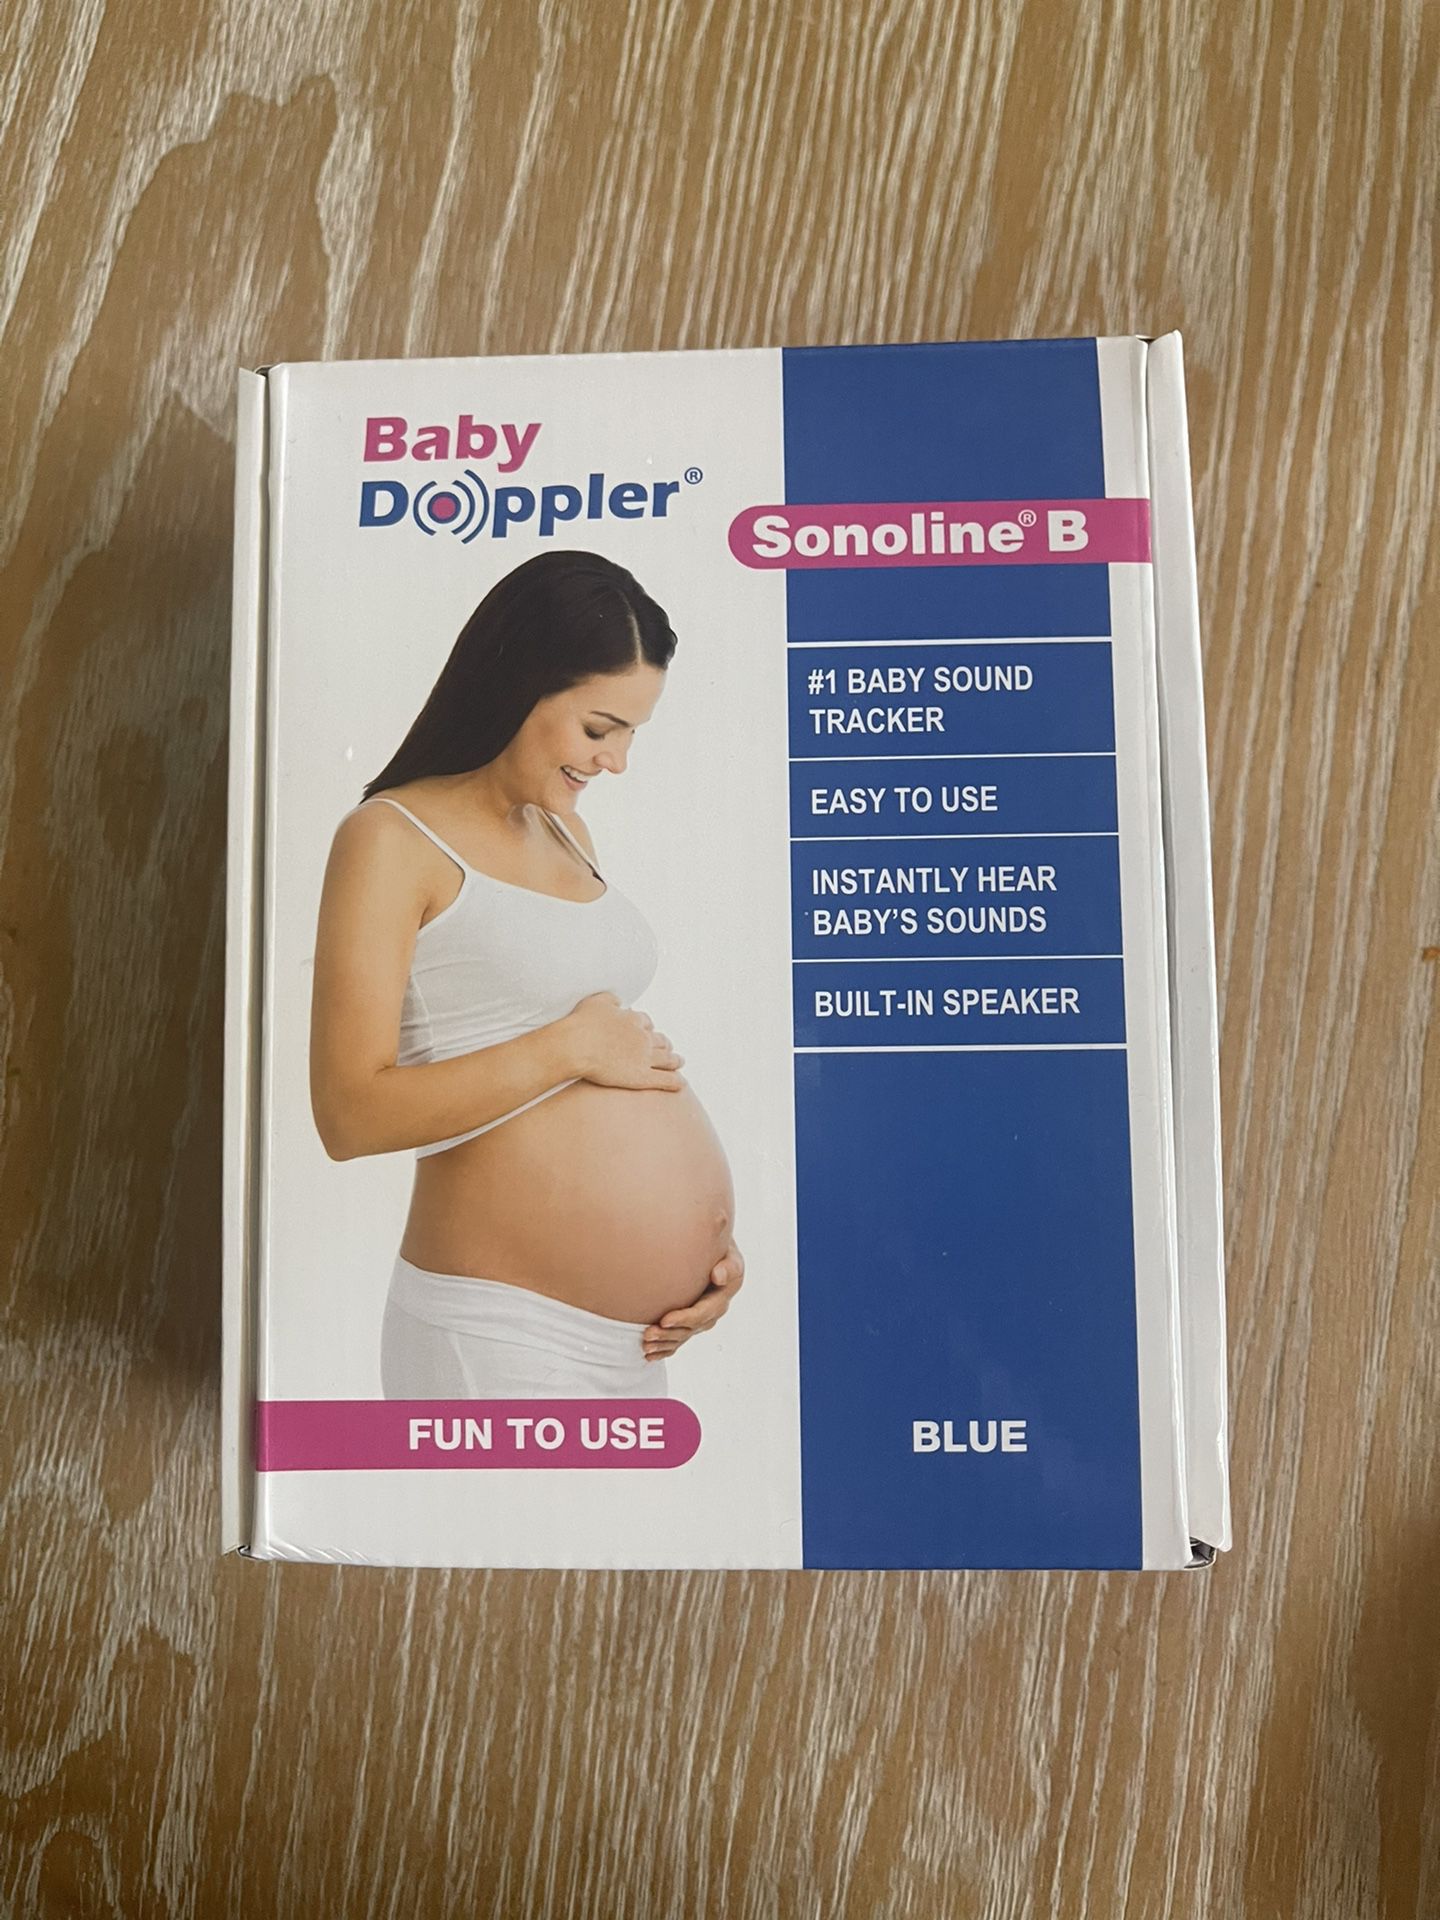 Baby Doppler Sonoline B